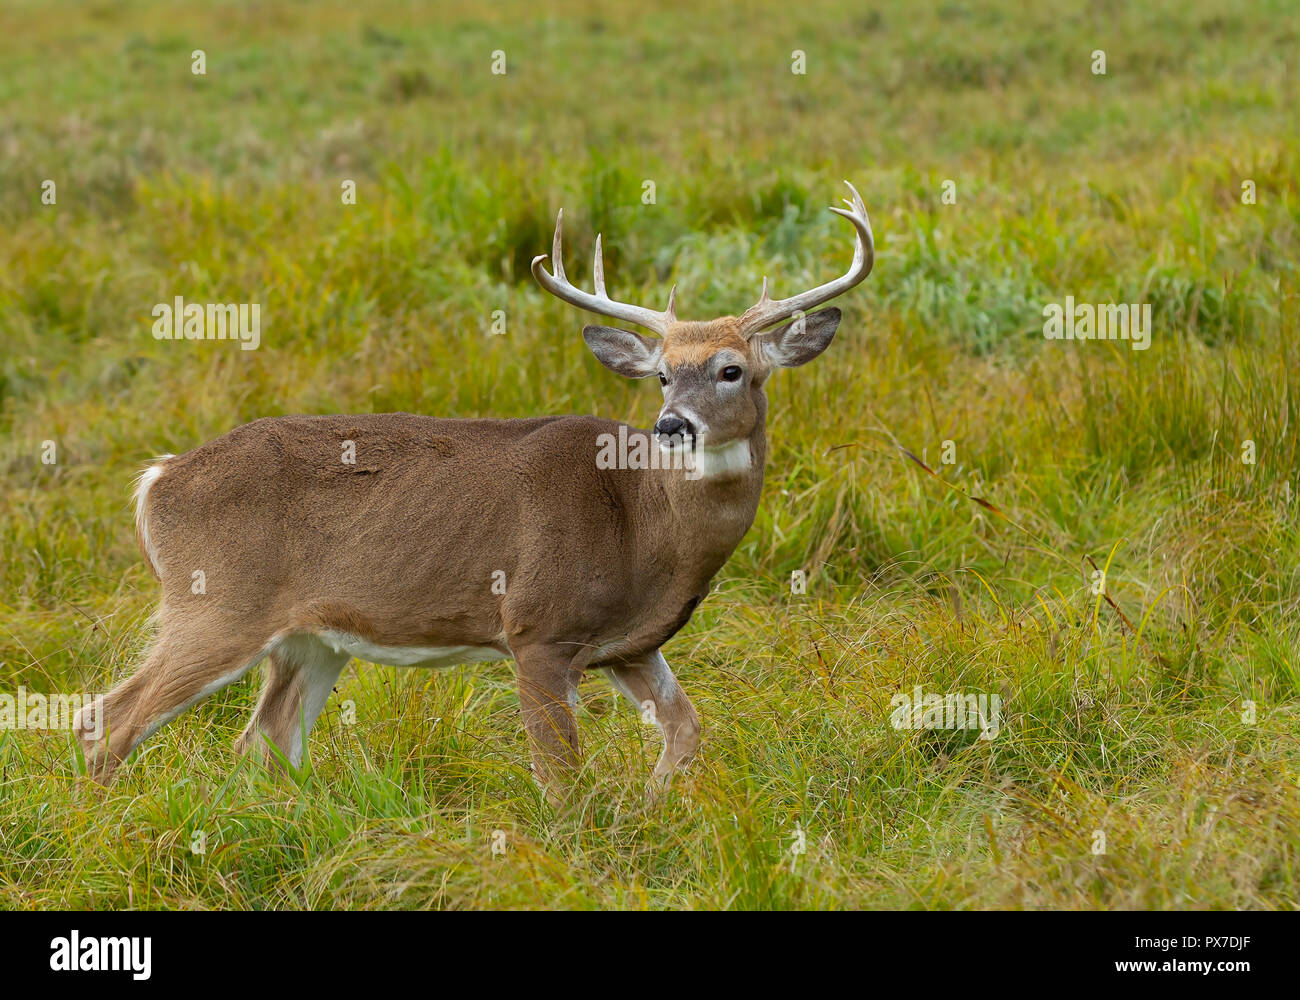 White-tailed deer buck avec un énorme cou debout en alerte à la recherche d'un partenaire au cours de l'ornière dans la lumière de l'automne tôt le matin à Ottawa, Canada Banque D'Images